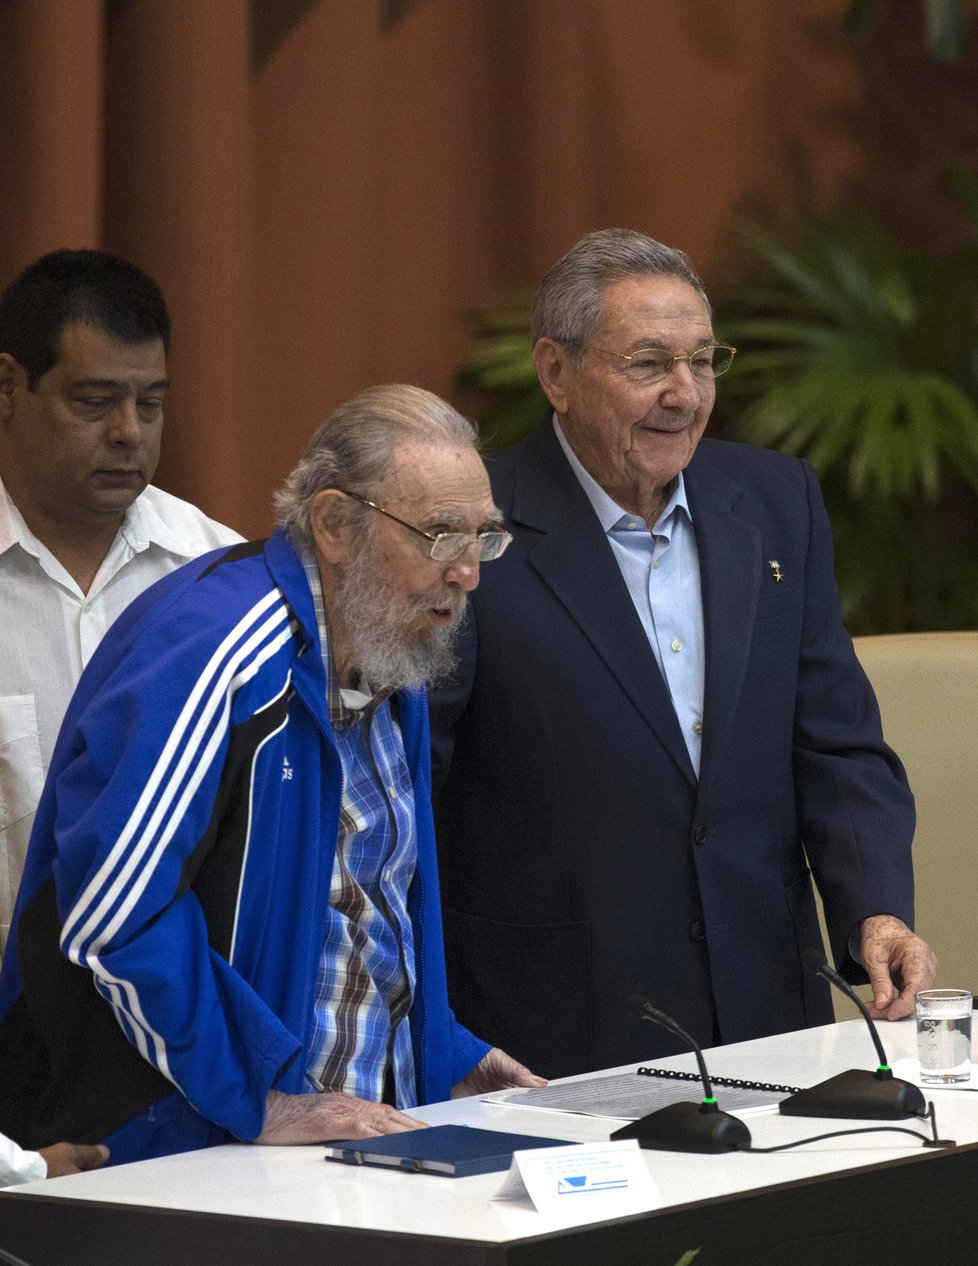 Tuší Fidel Castro smrt? Na kongresu komunistů se loučil